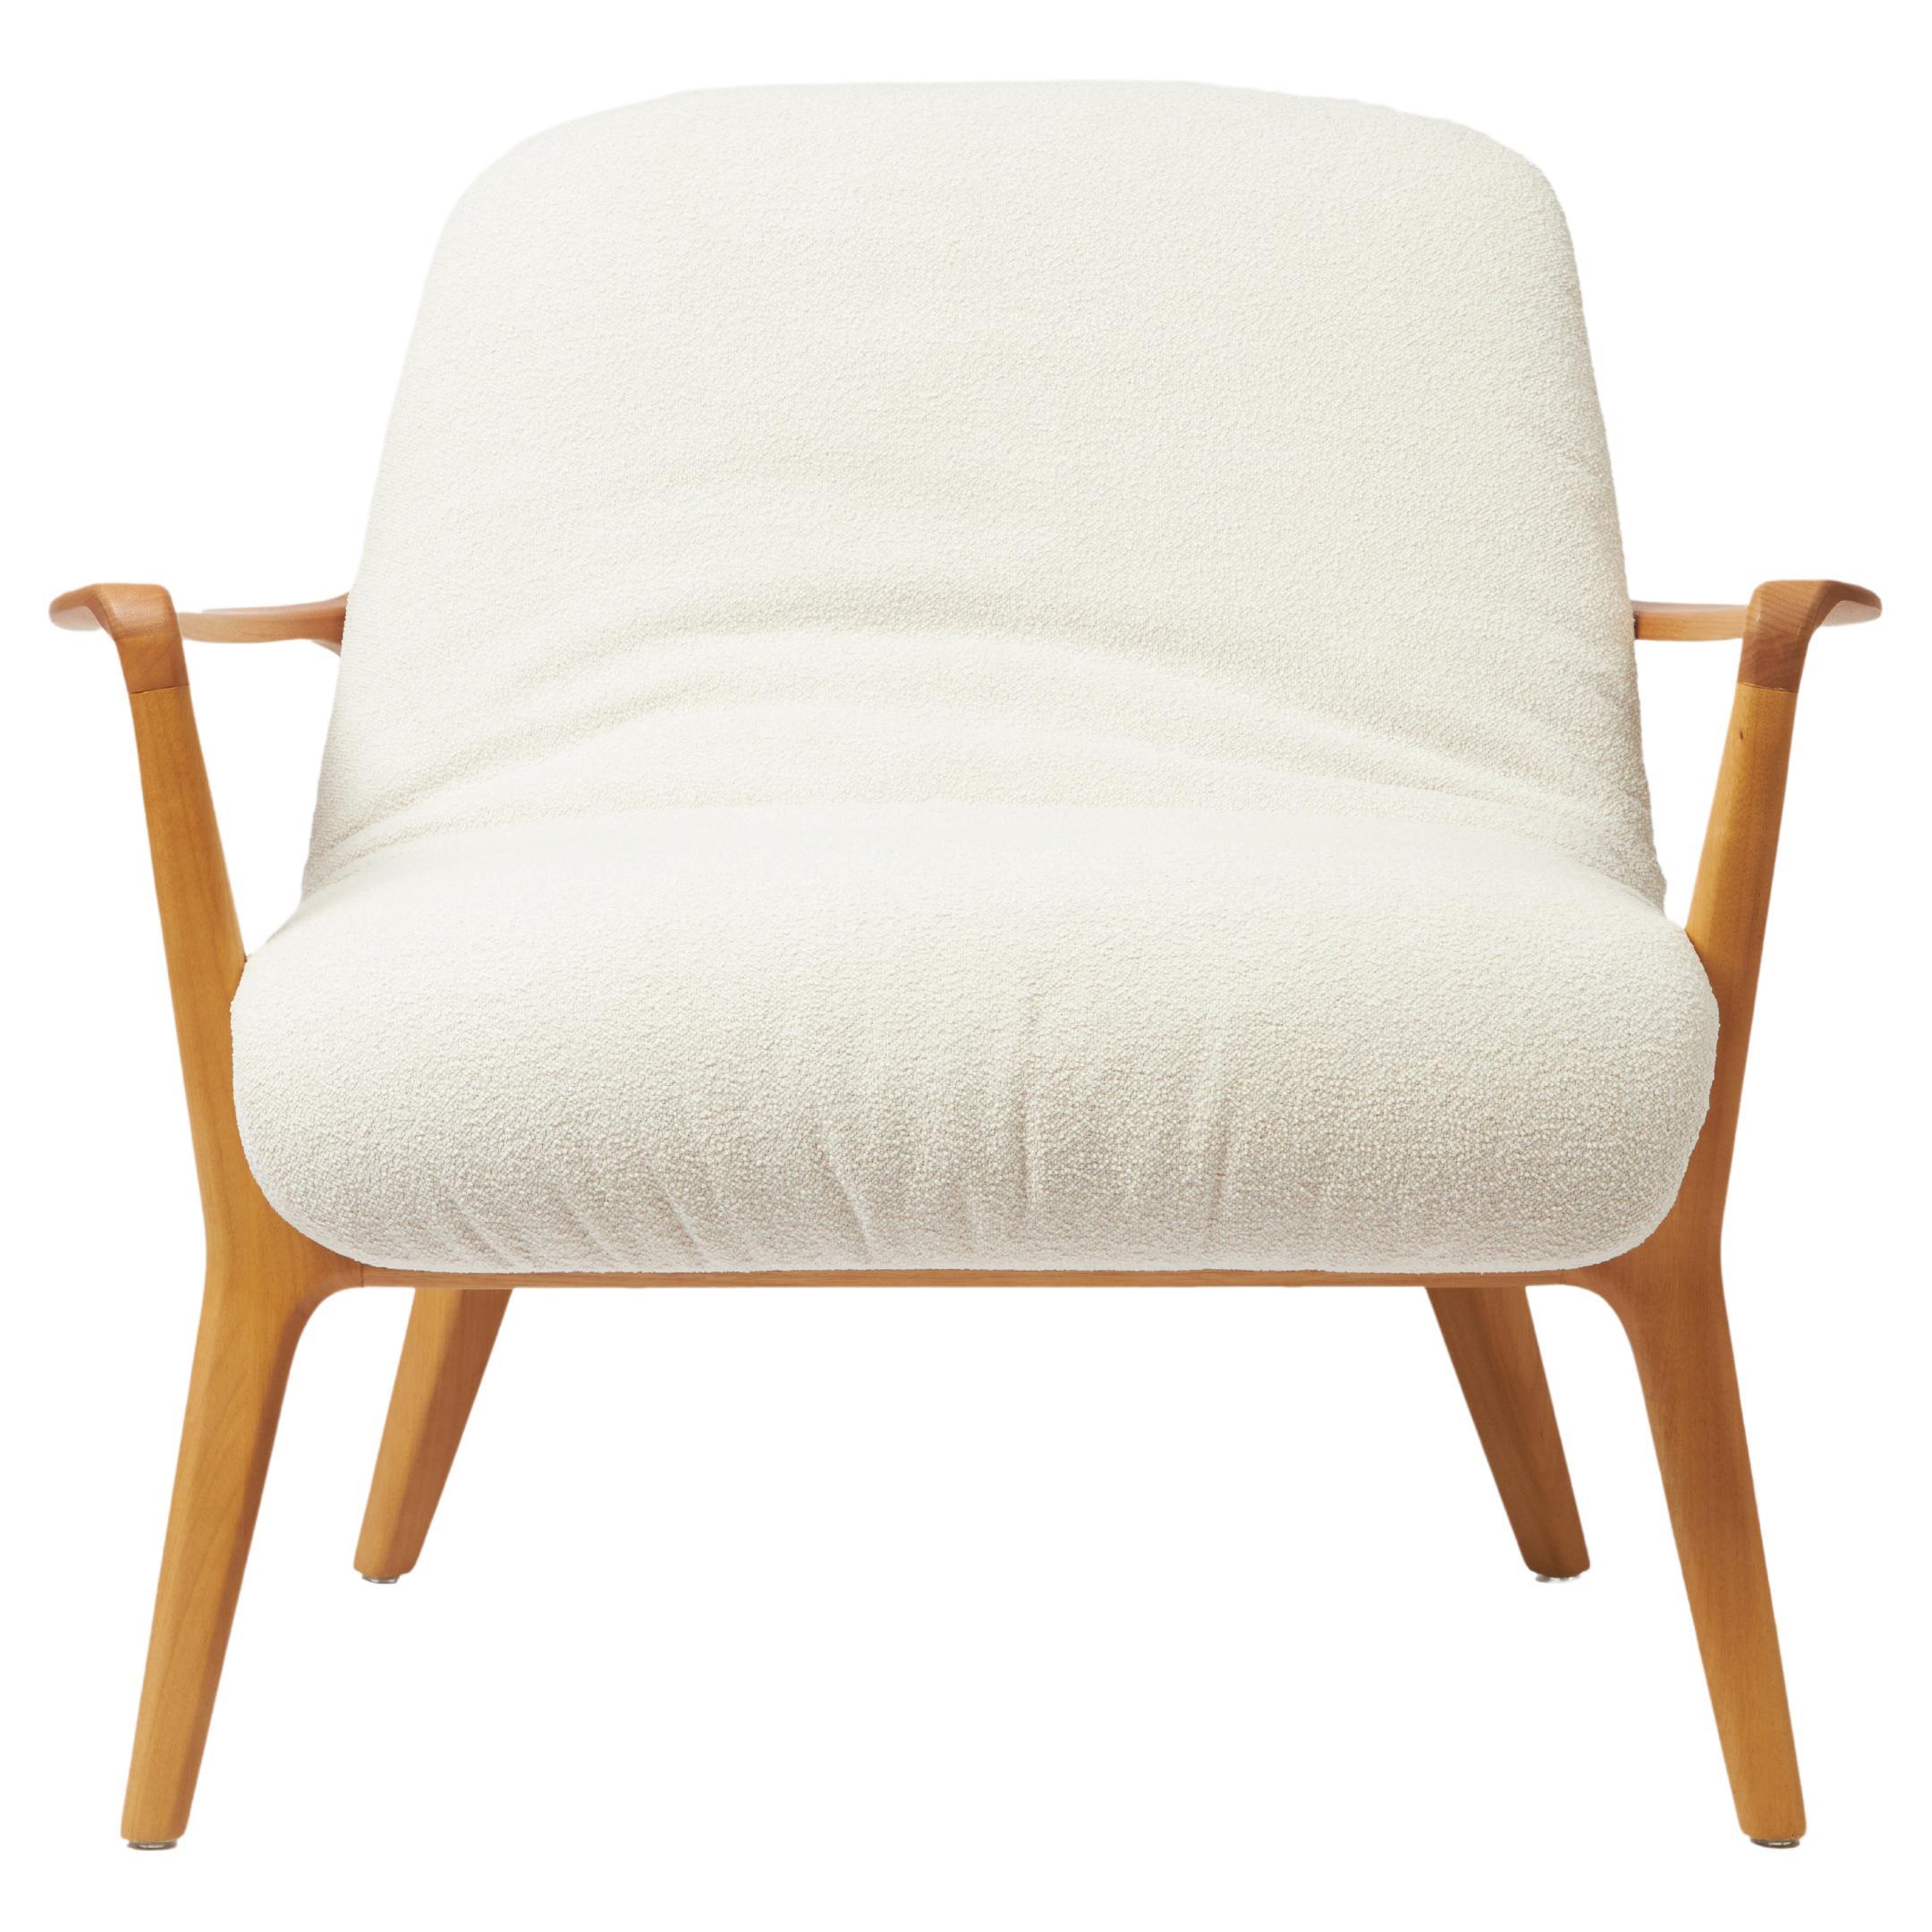 Minimalistischer Insigne-Sessel im minimalistischen Stil, geformt aus Massivholz, Sitzmöbeln und Textilien